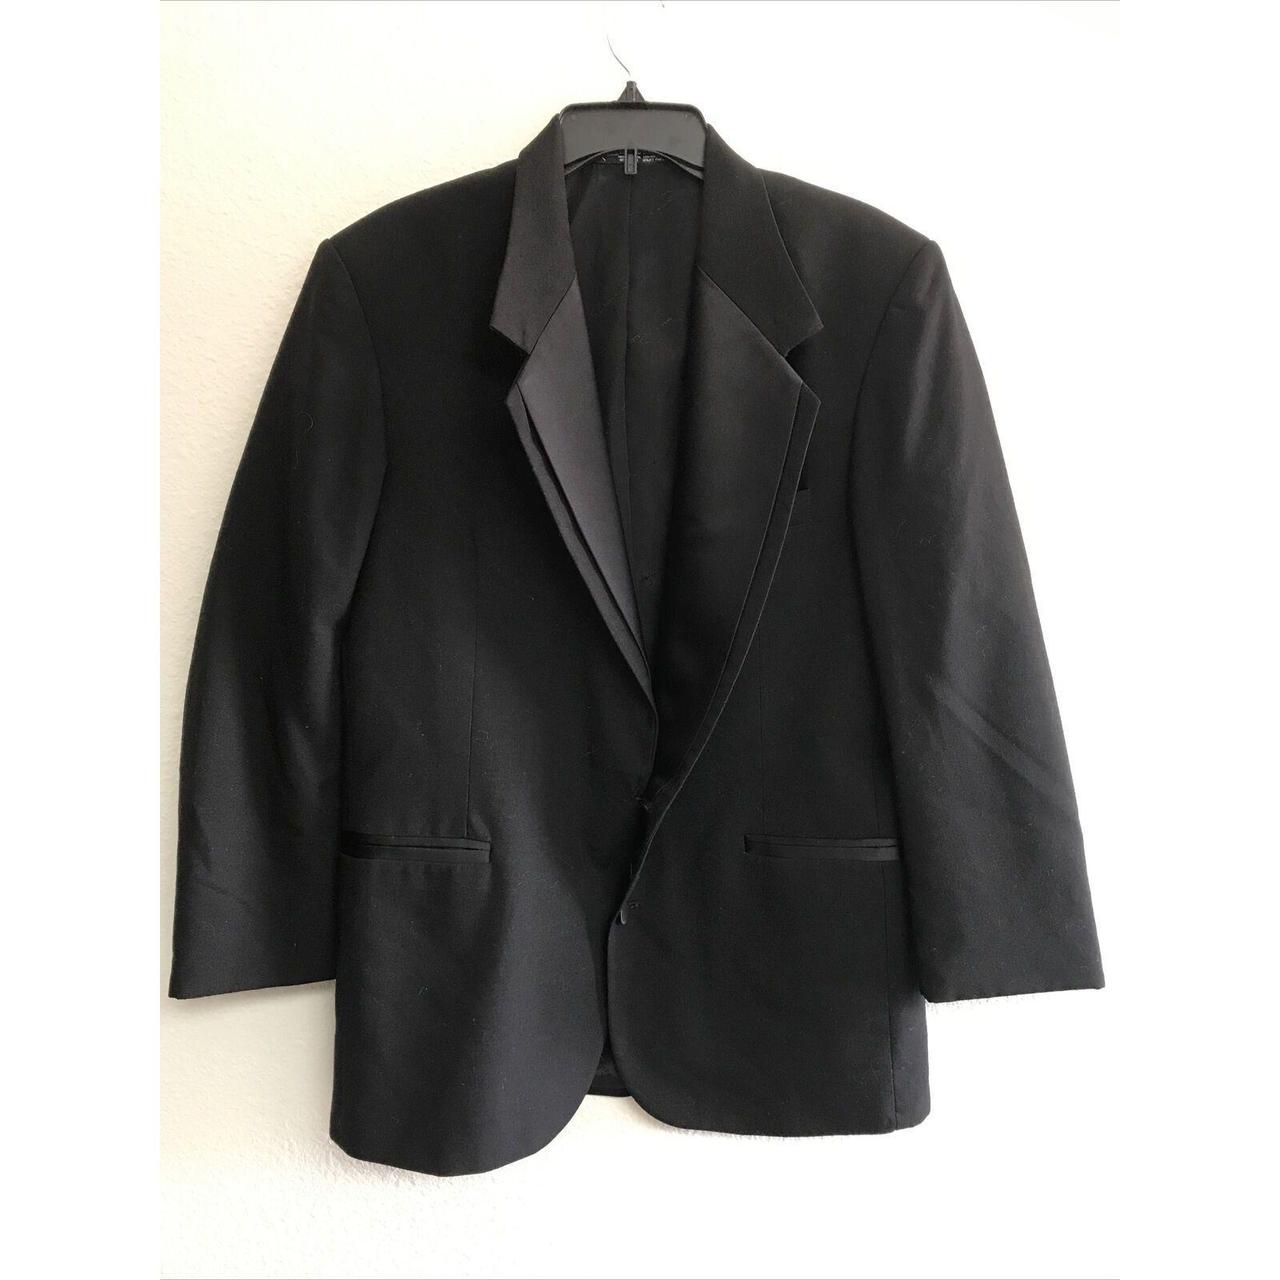 Oscar De La Renta Men Black Tuxedo Jacket 42R Formal... - Depop